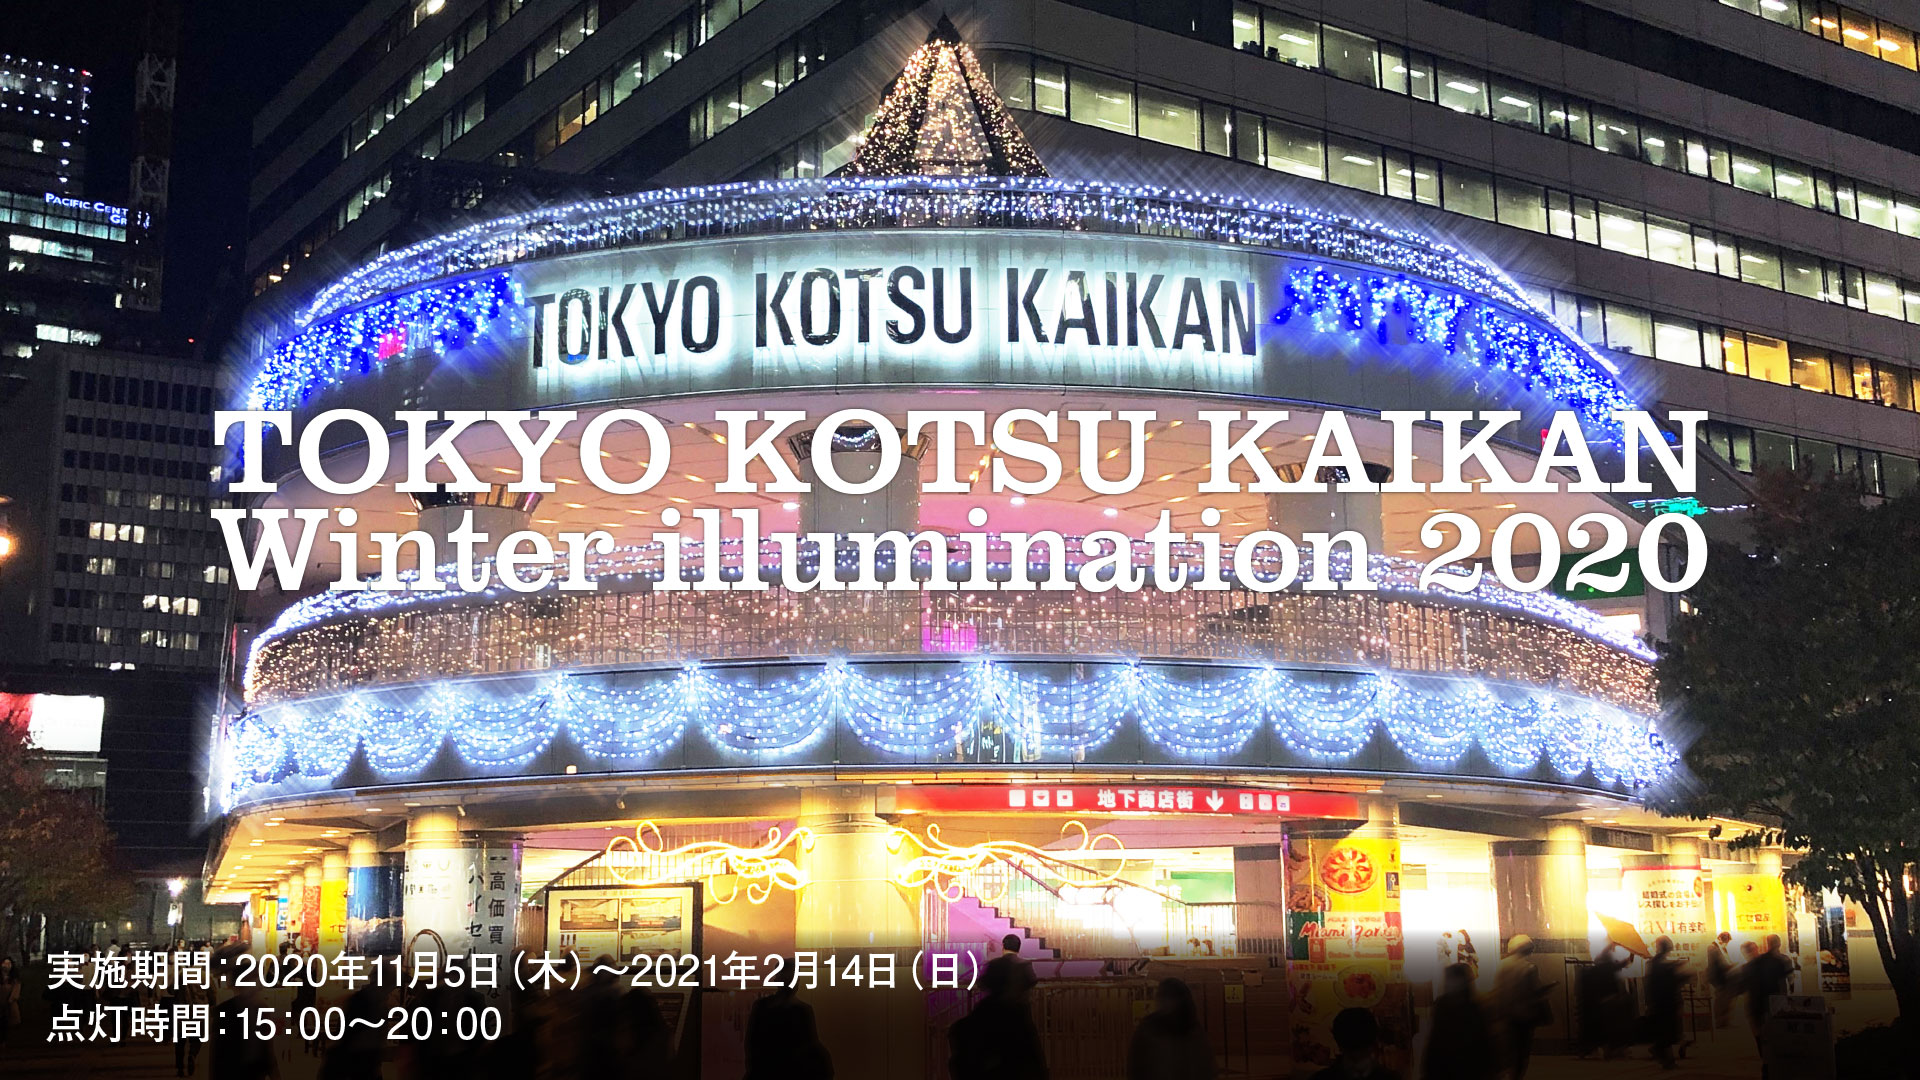 TOKYO KOTSU KAIKAN Winter illumination 2020